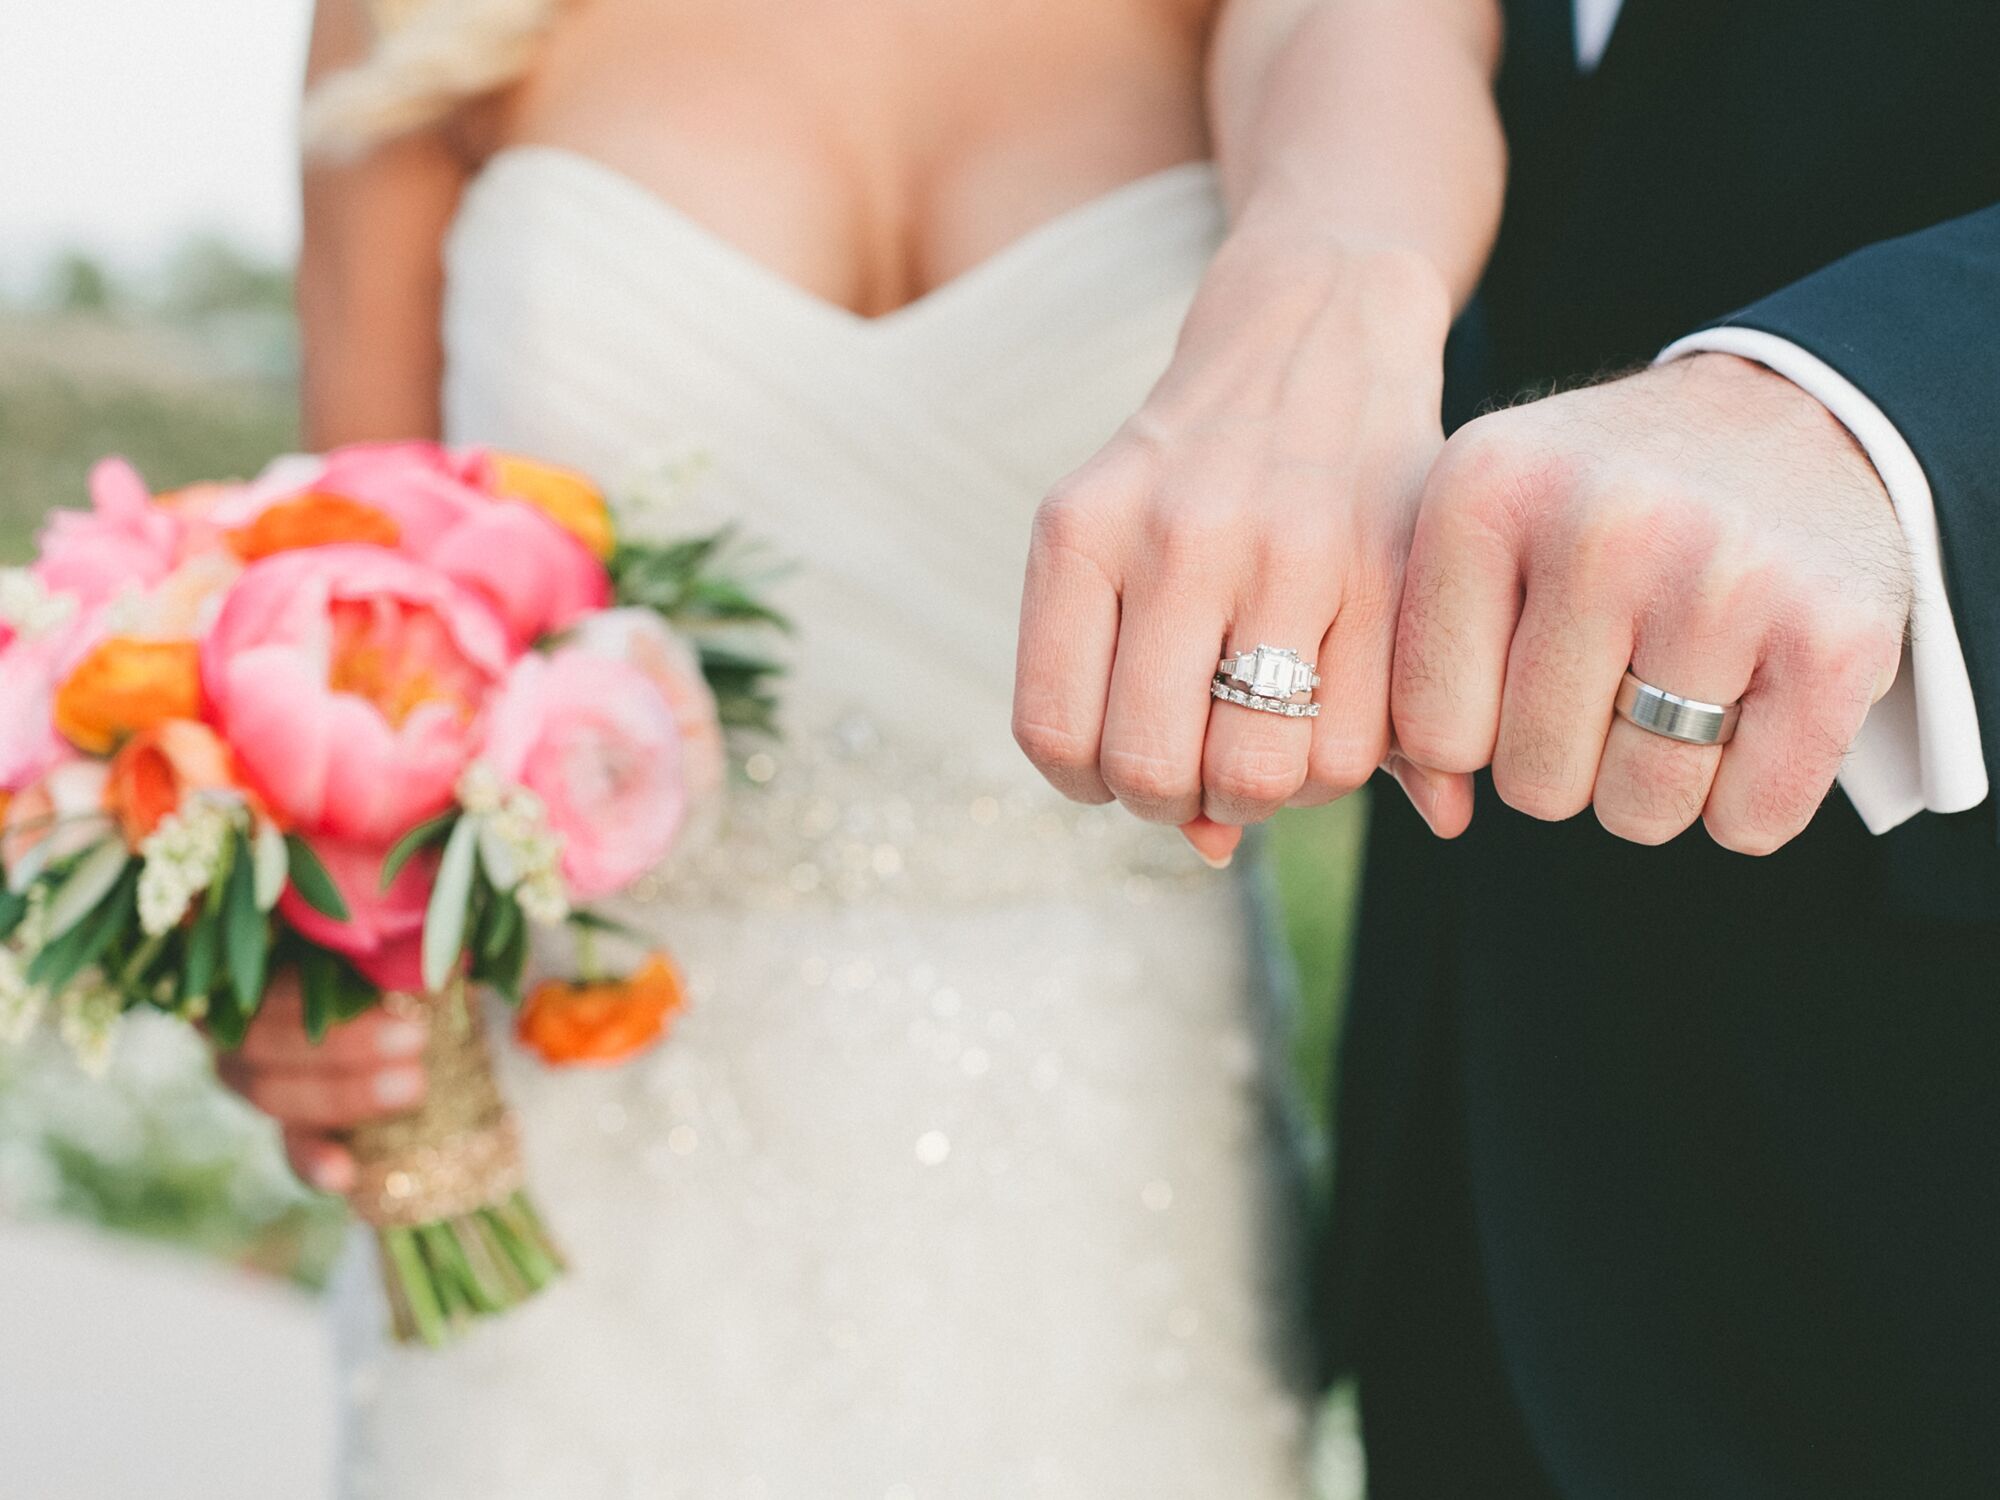 Spouse doesn t wear wedding ring